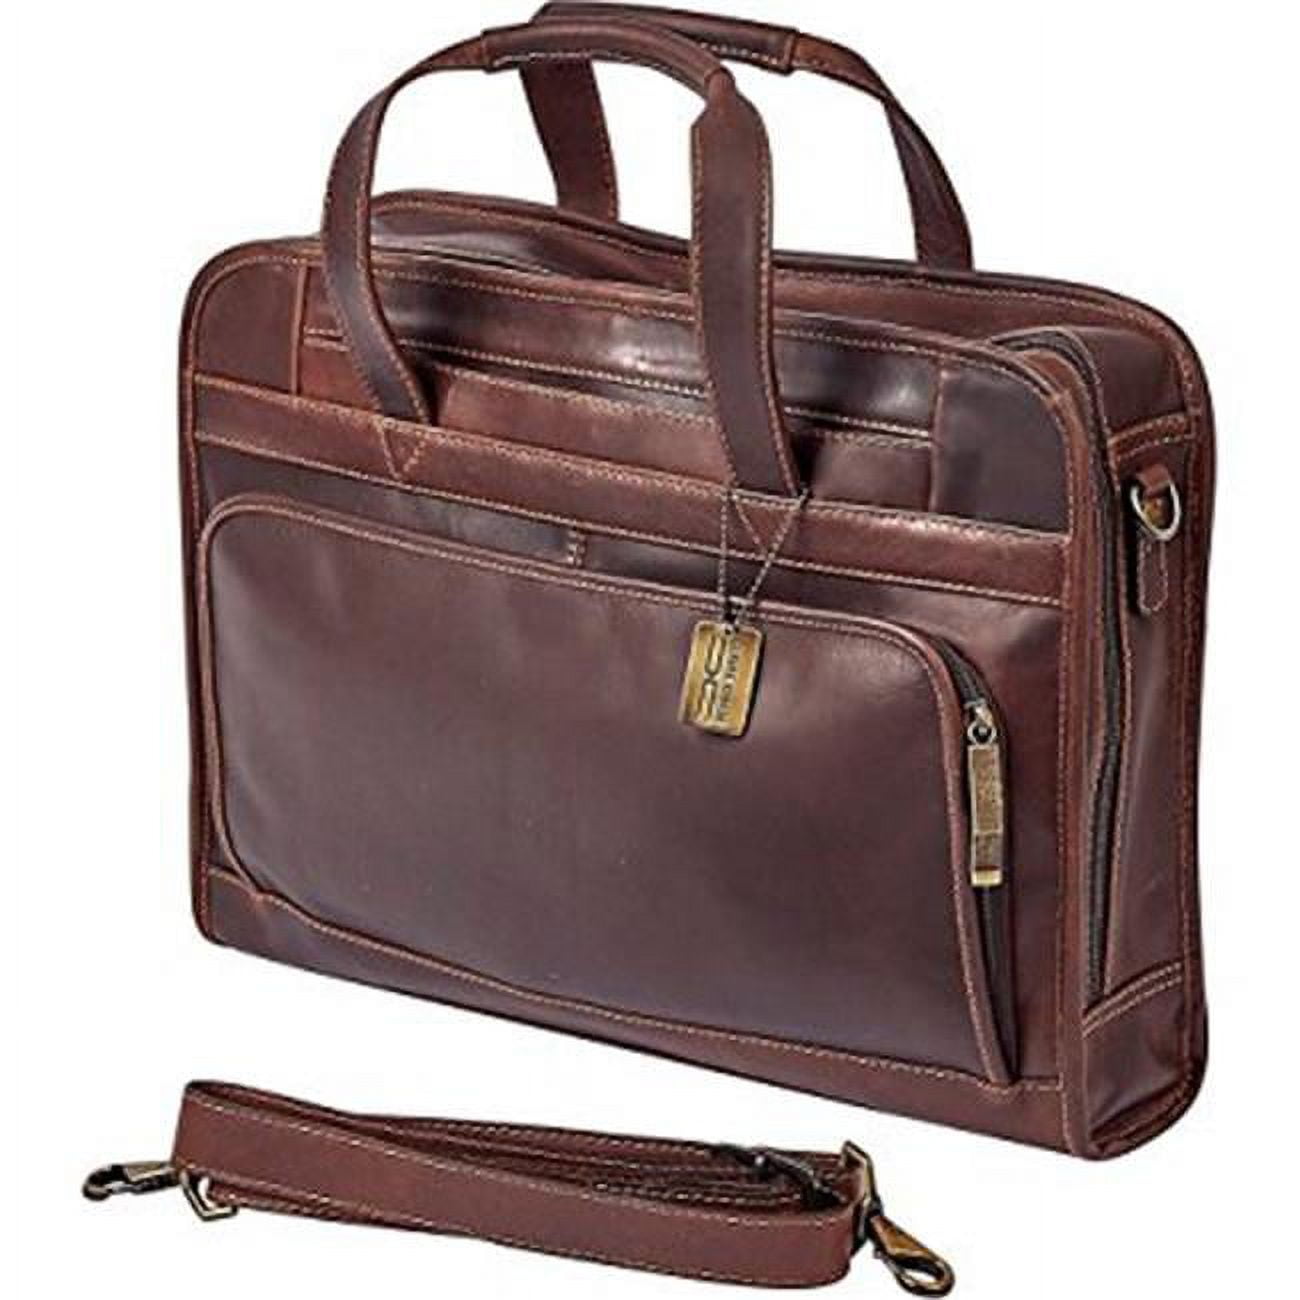 600004991955 Legendary Professional Briefcase, Dark Brown